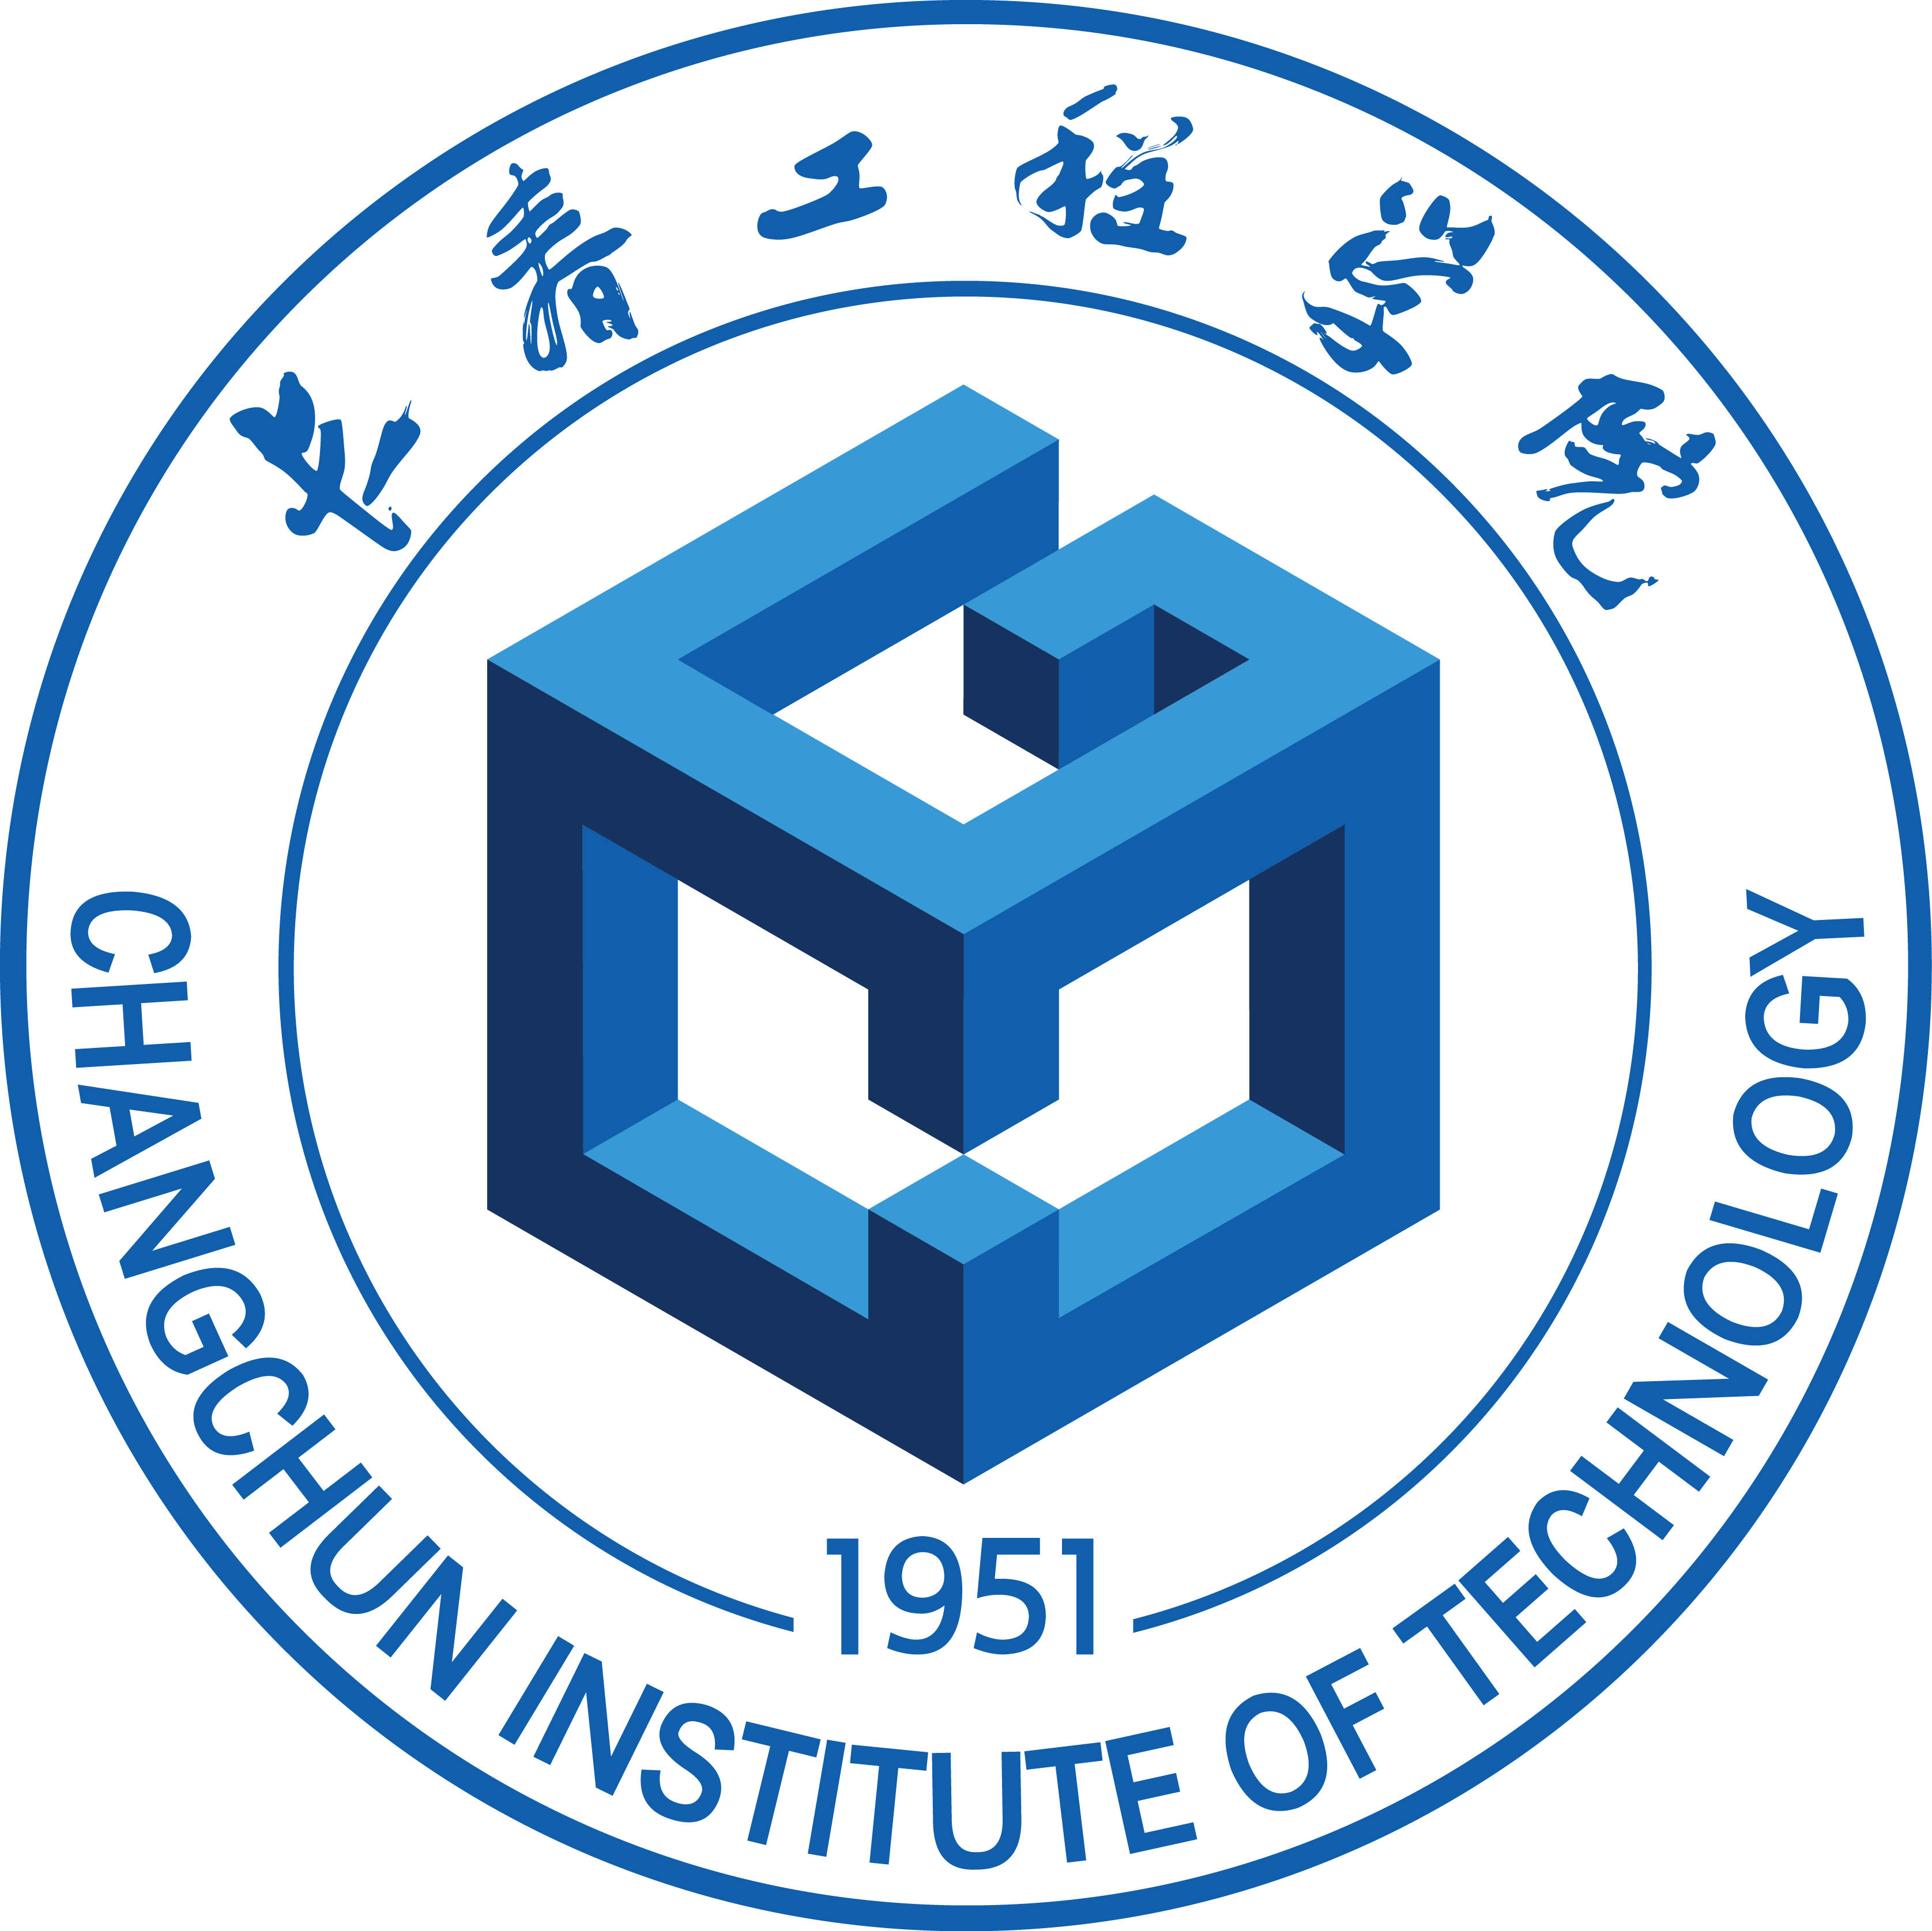 长春师范大学 logo图片